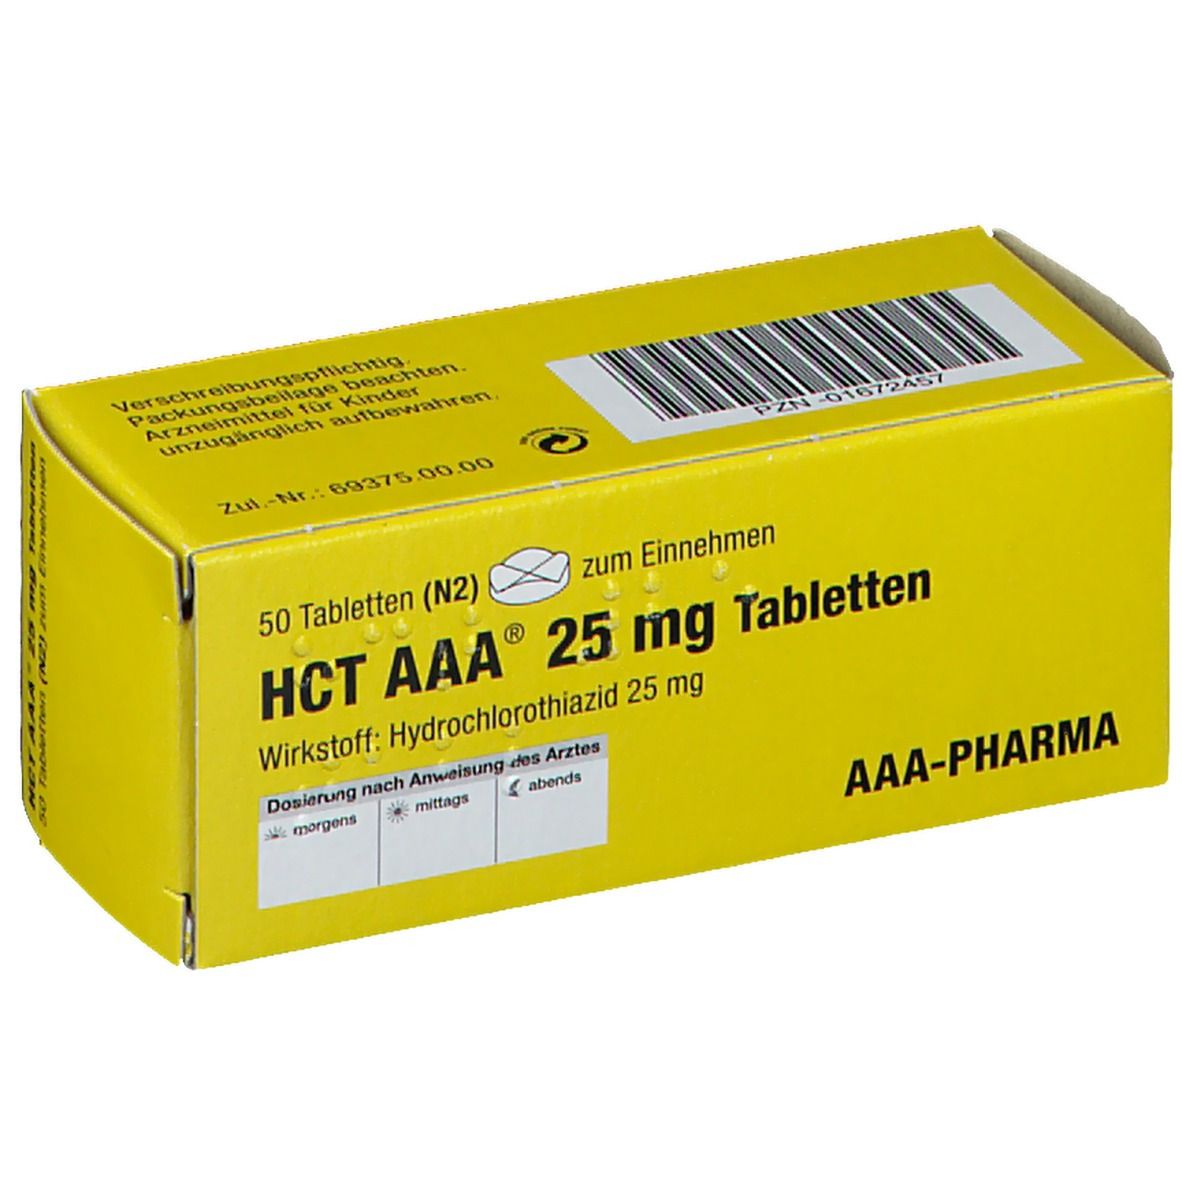 HCT AAA® 25 mg